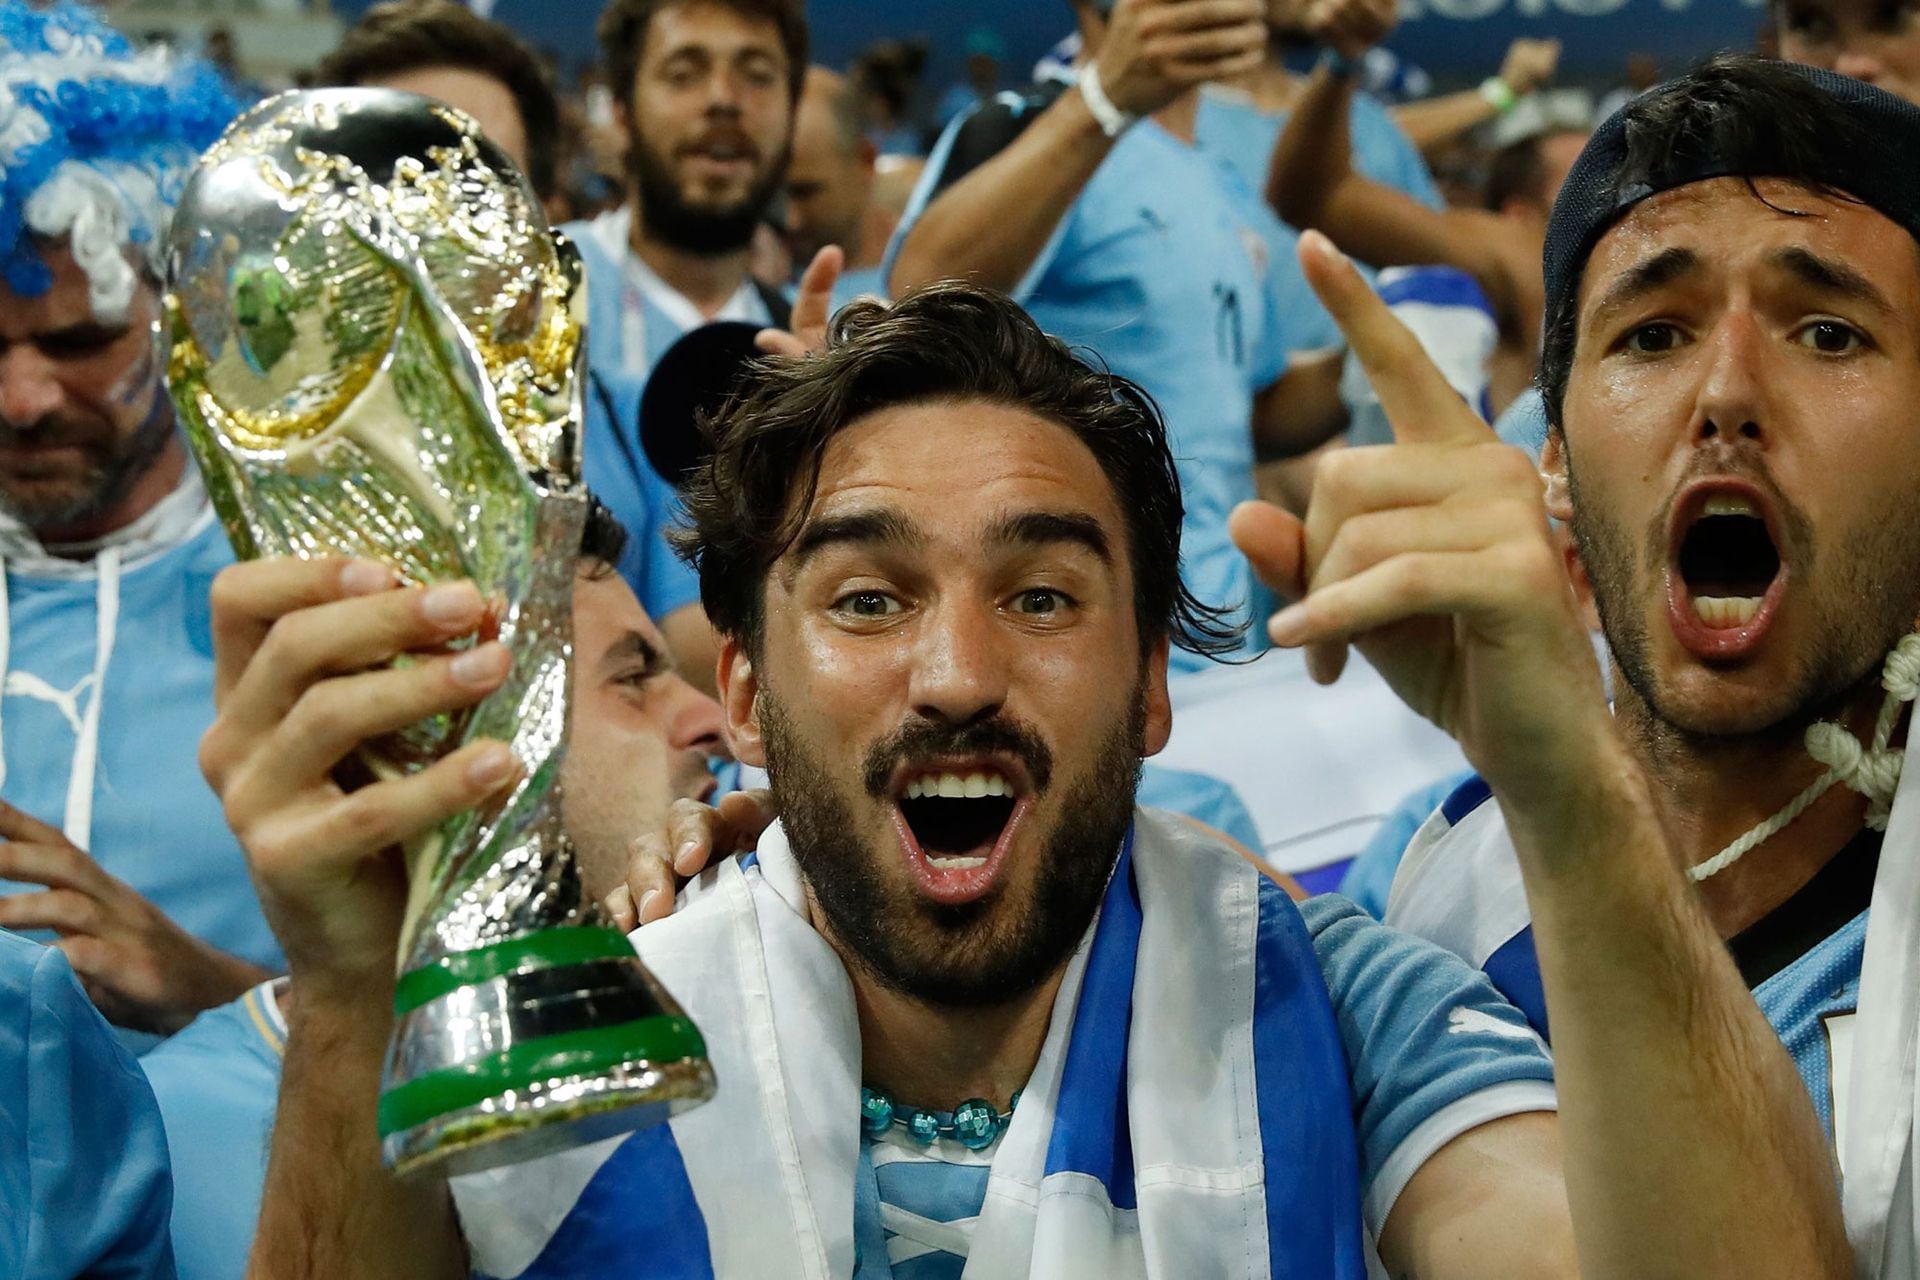 Los hinchas argentinos hinchan por Uruguay en el Mundial, unn fenómeno que jamás sucedería a la inversa.